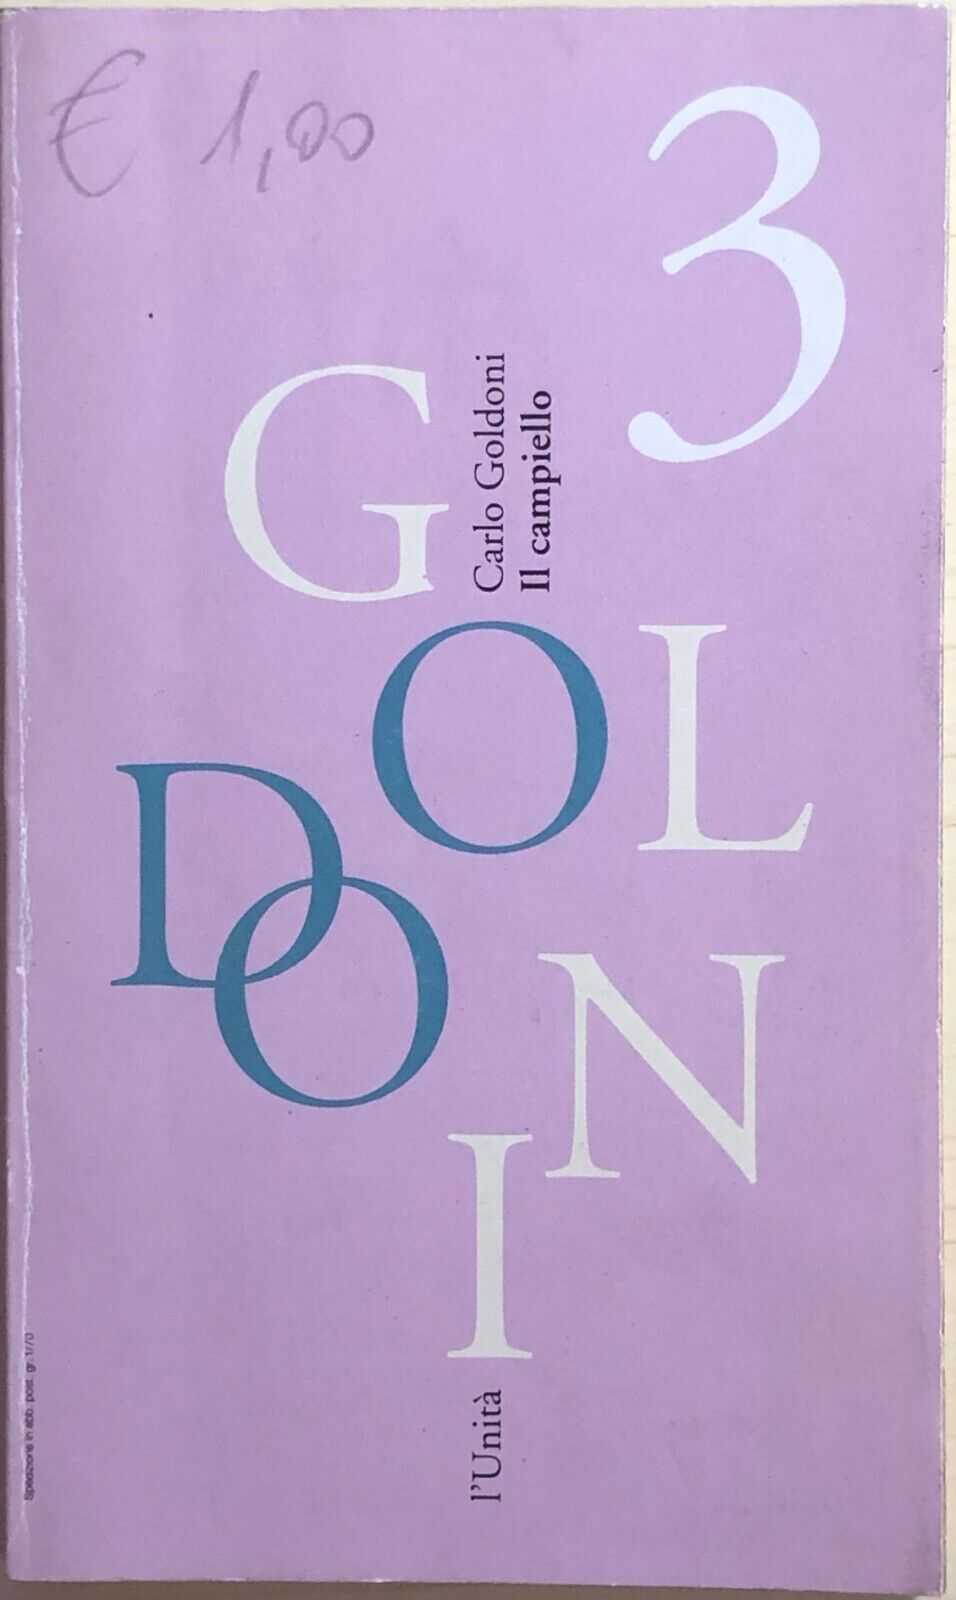 Il campiello di Carlo Goldoni, 1993, L'Unit?